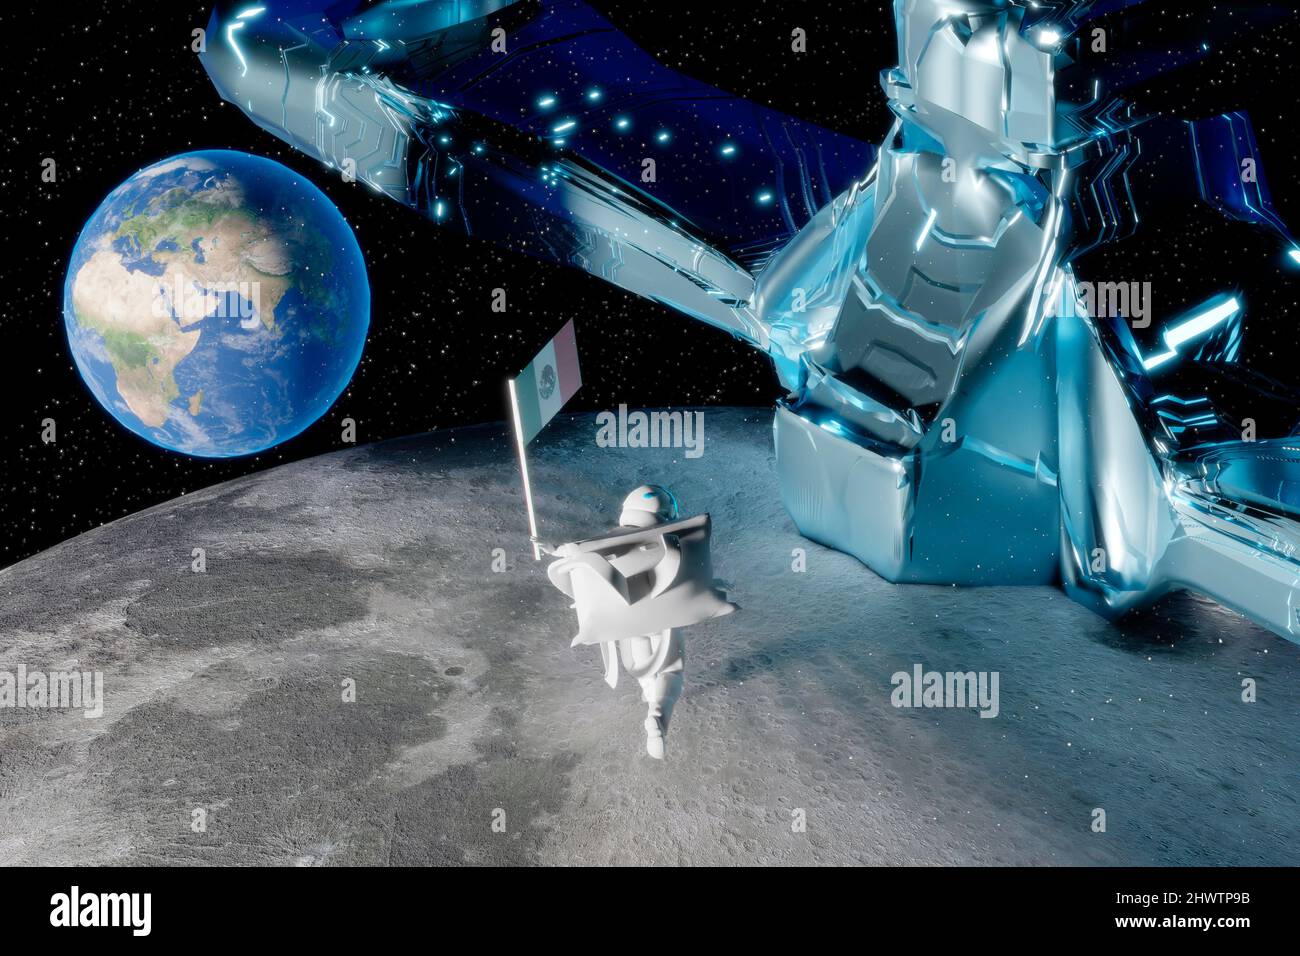 La donna pilota astronauta nella missione di fantascienza sulla luna tiene in mano la bandiera del Messico mentre il pianeta terra è visualizzato nel backgroun Foto Stock